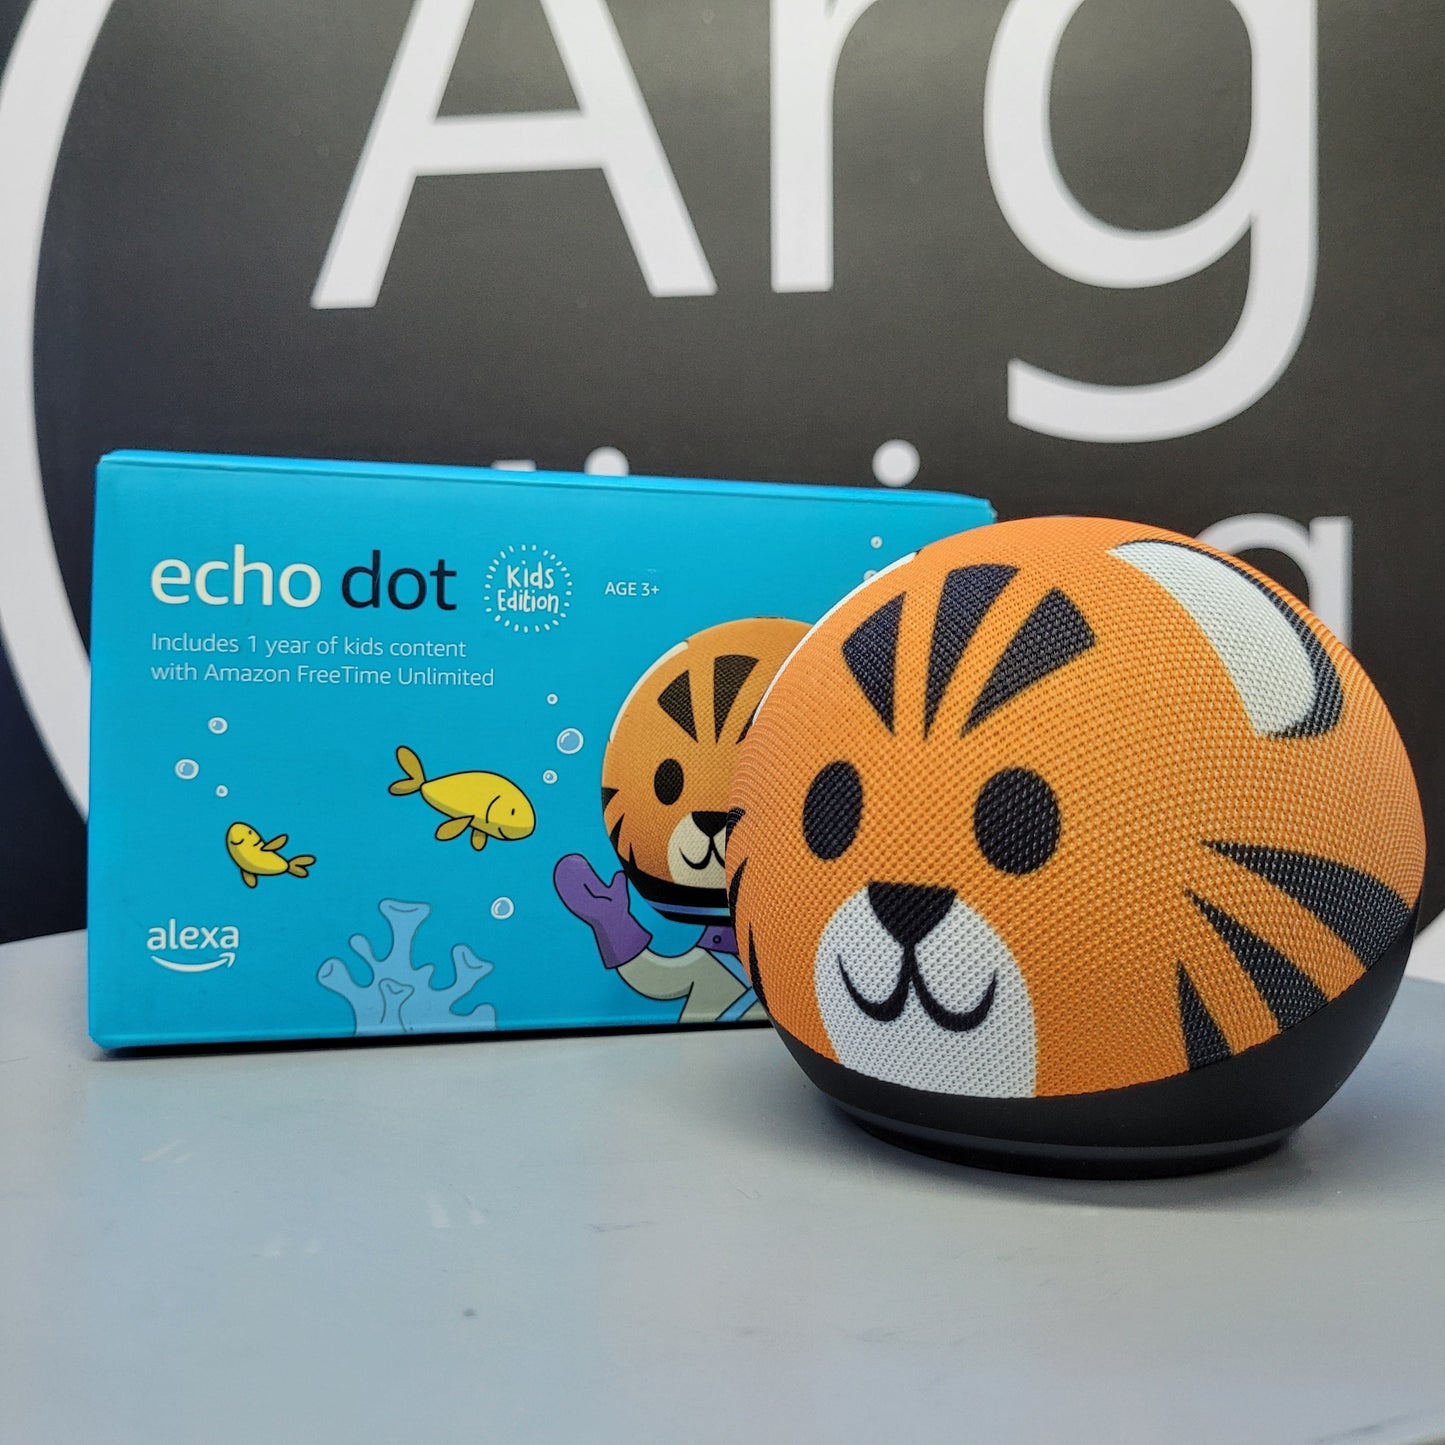 AMAZON ECHO DOT 4TH GEN KIDS - Premium Hub de Amazon - Solo $136500! Compra ahora Web3Arg